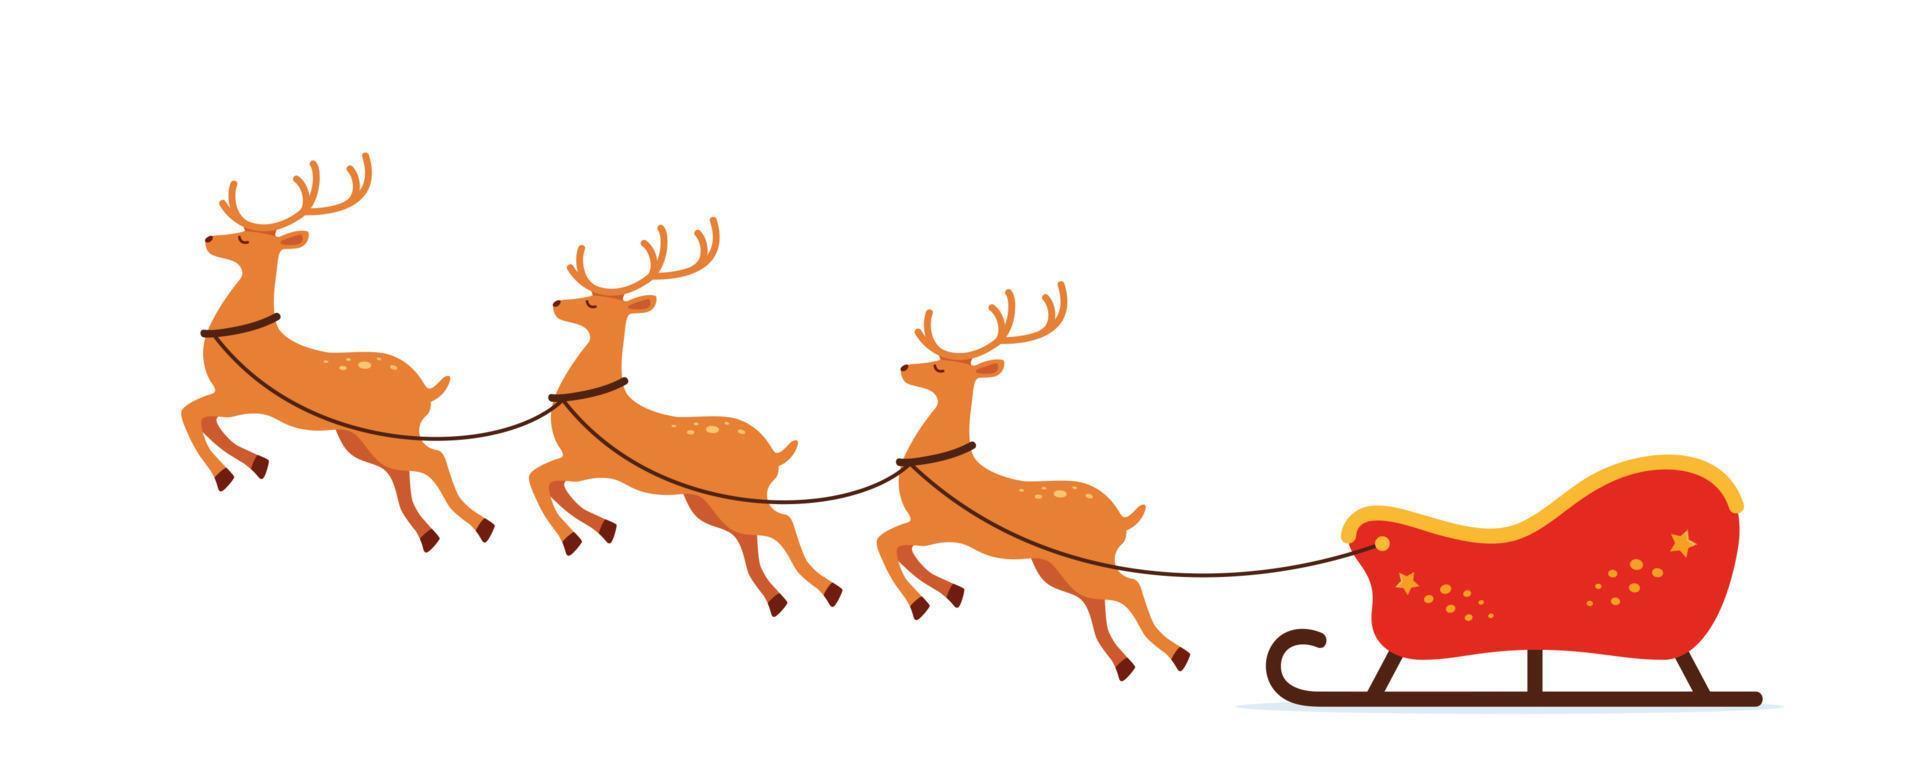 Santa su slitta e il suo renne. Natale saluto carta vettore illustrazione.